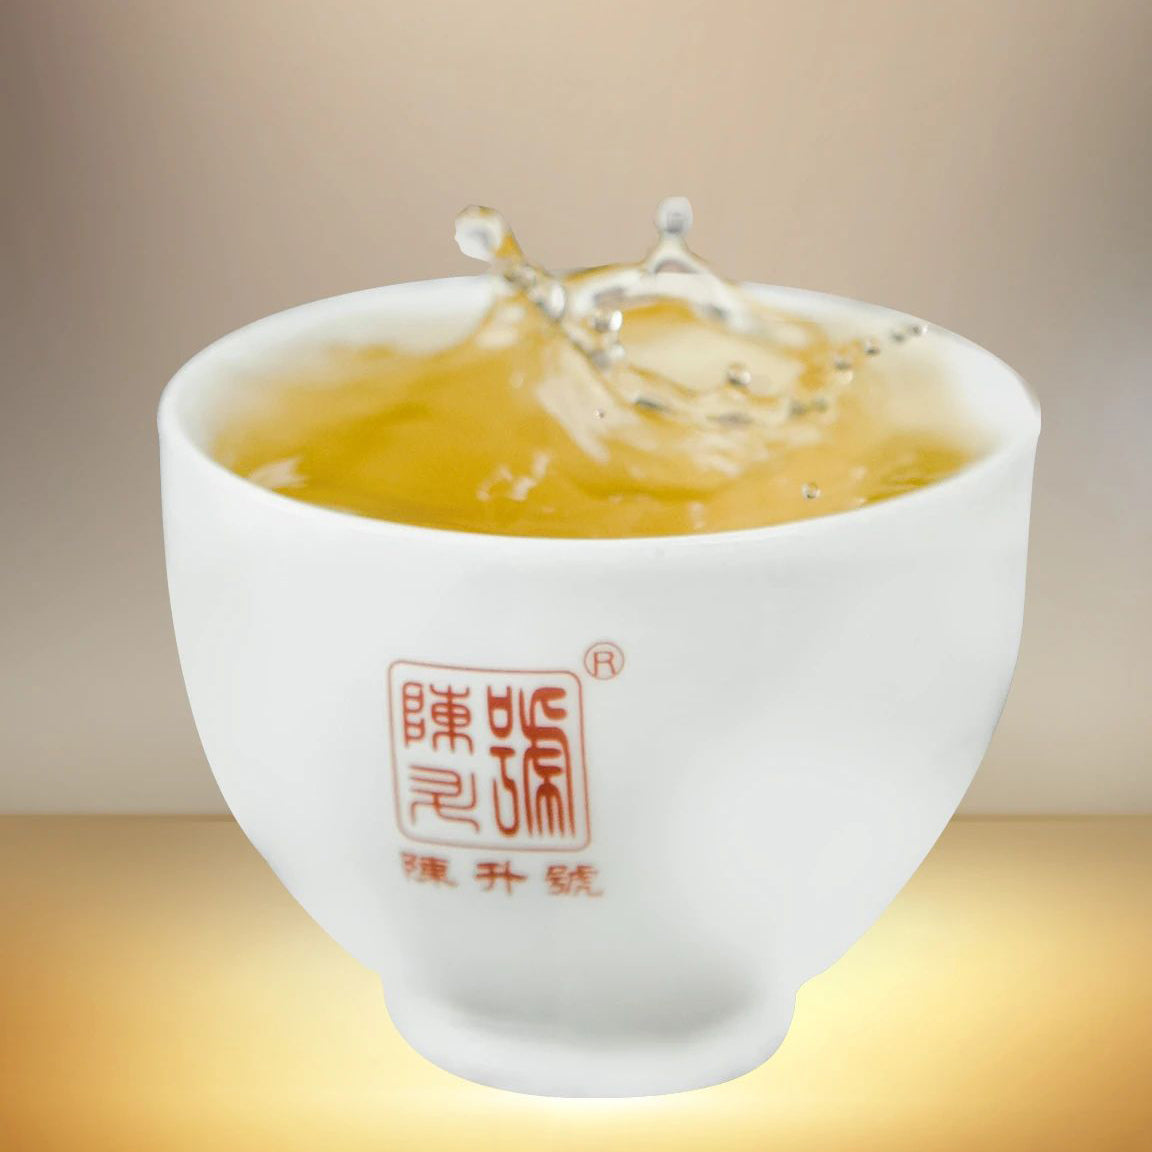 
                  
                    2020 Chen Sheng Hao Raw Pu-erh Tea
                  
                